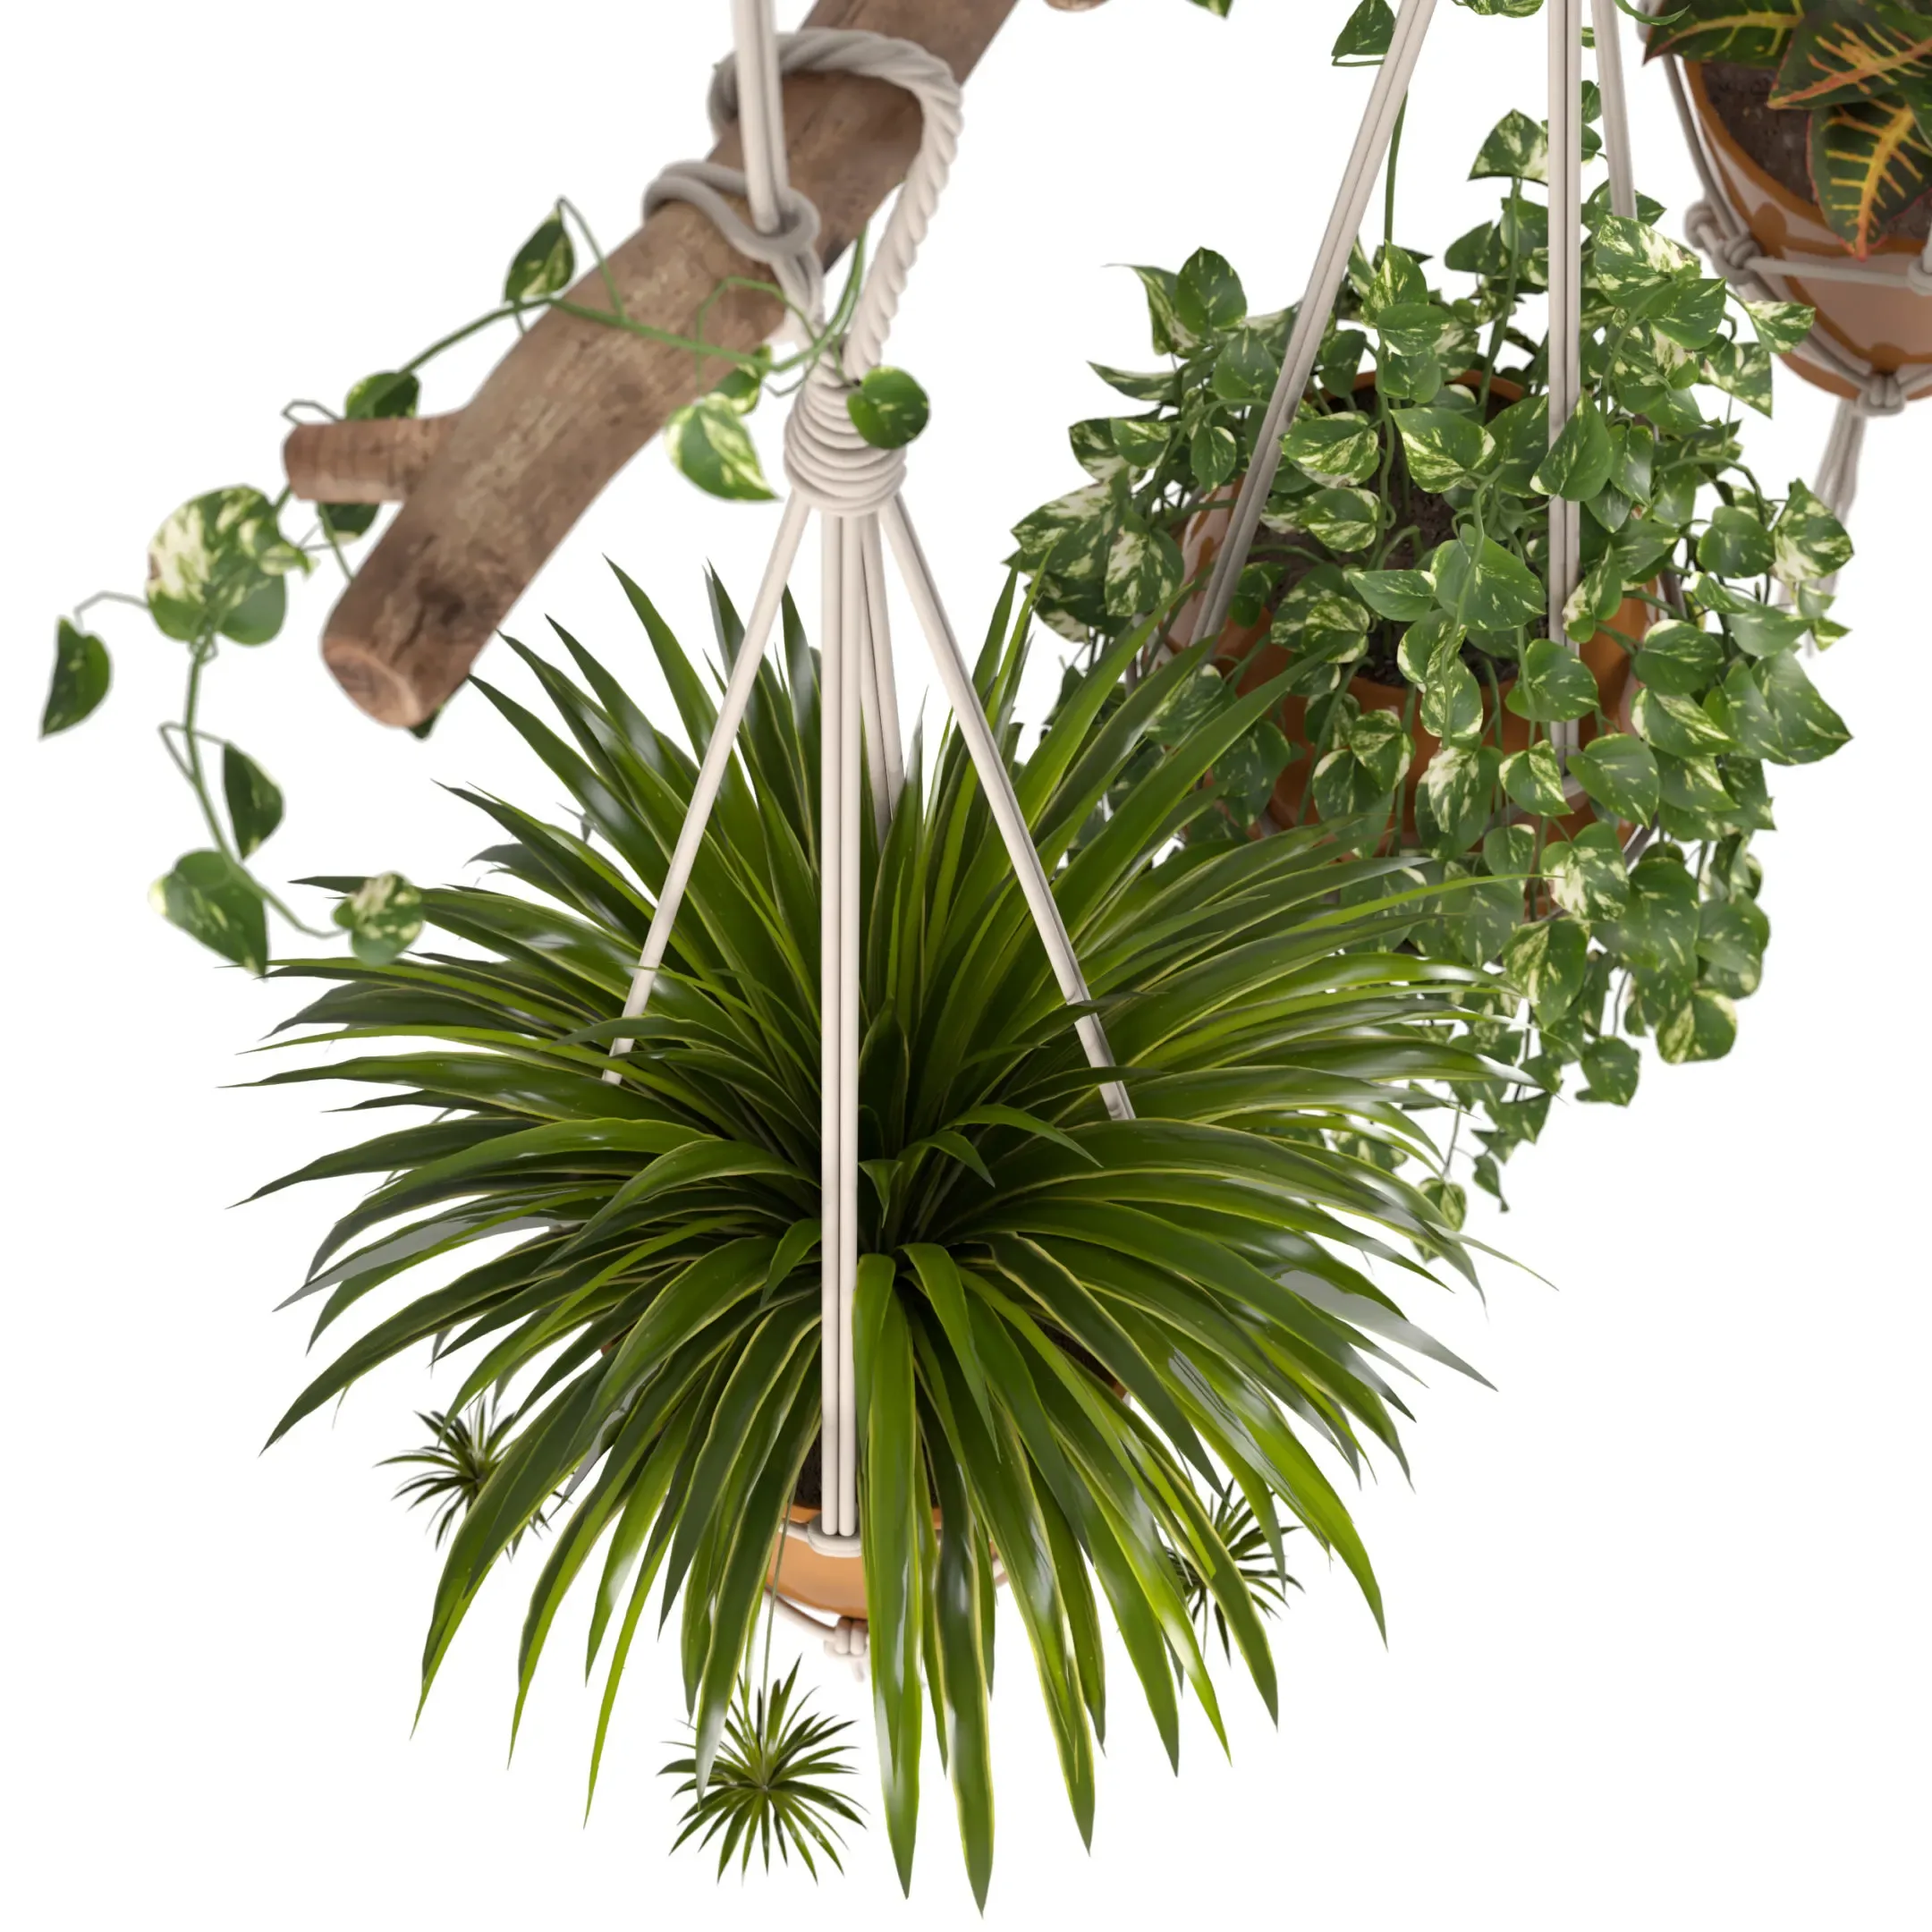 Indoor Plants Set 01 - Hanging Plants with Macrame